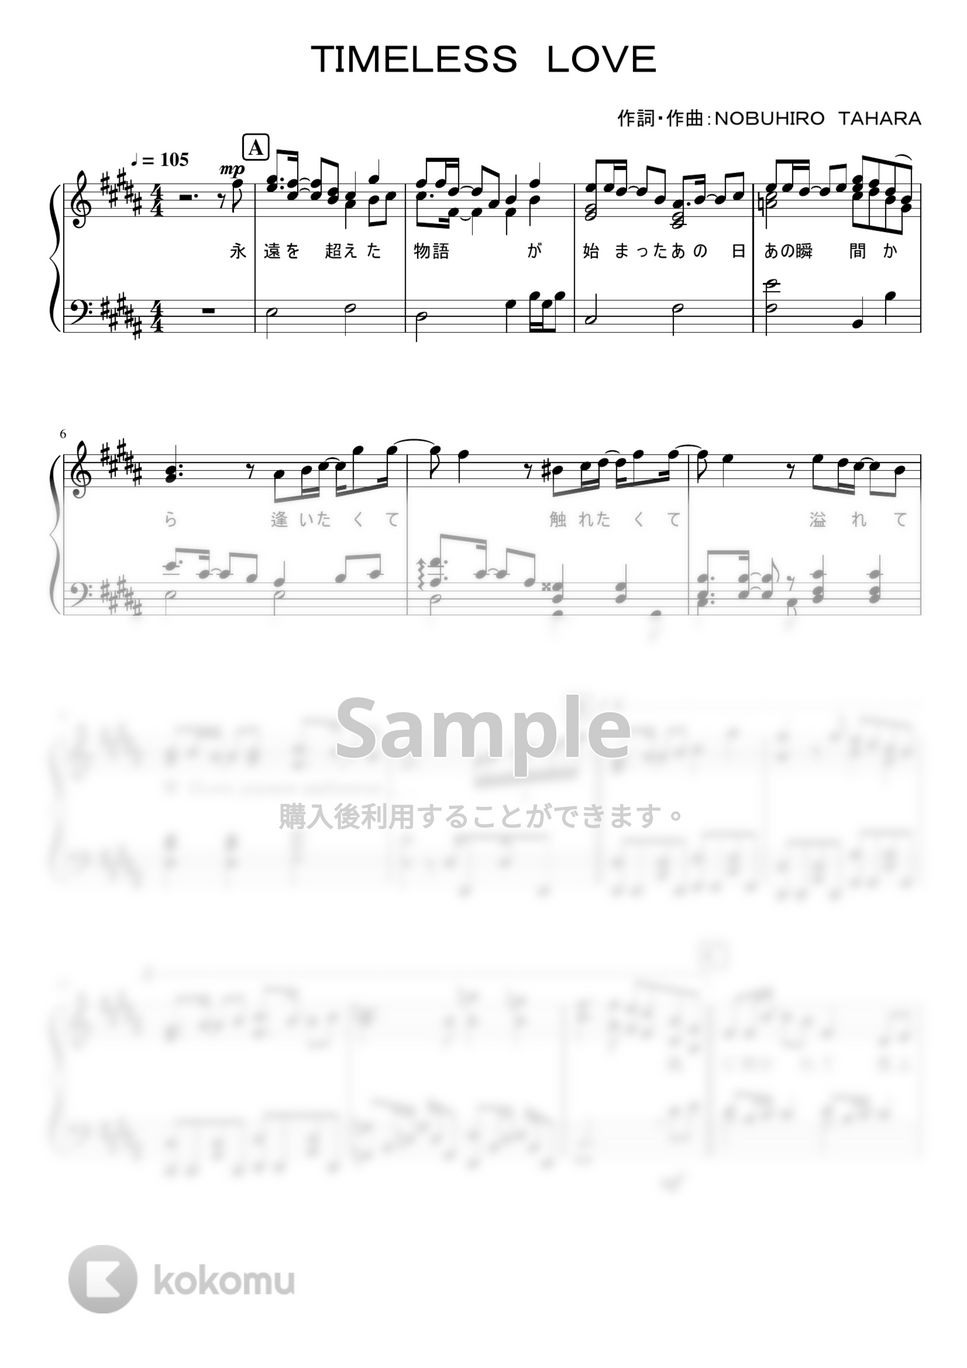 なにわ男子 - Timeless Love (1stアルバム「1st Love」収録曲。) by ピアノぷりん